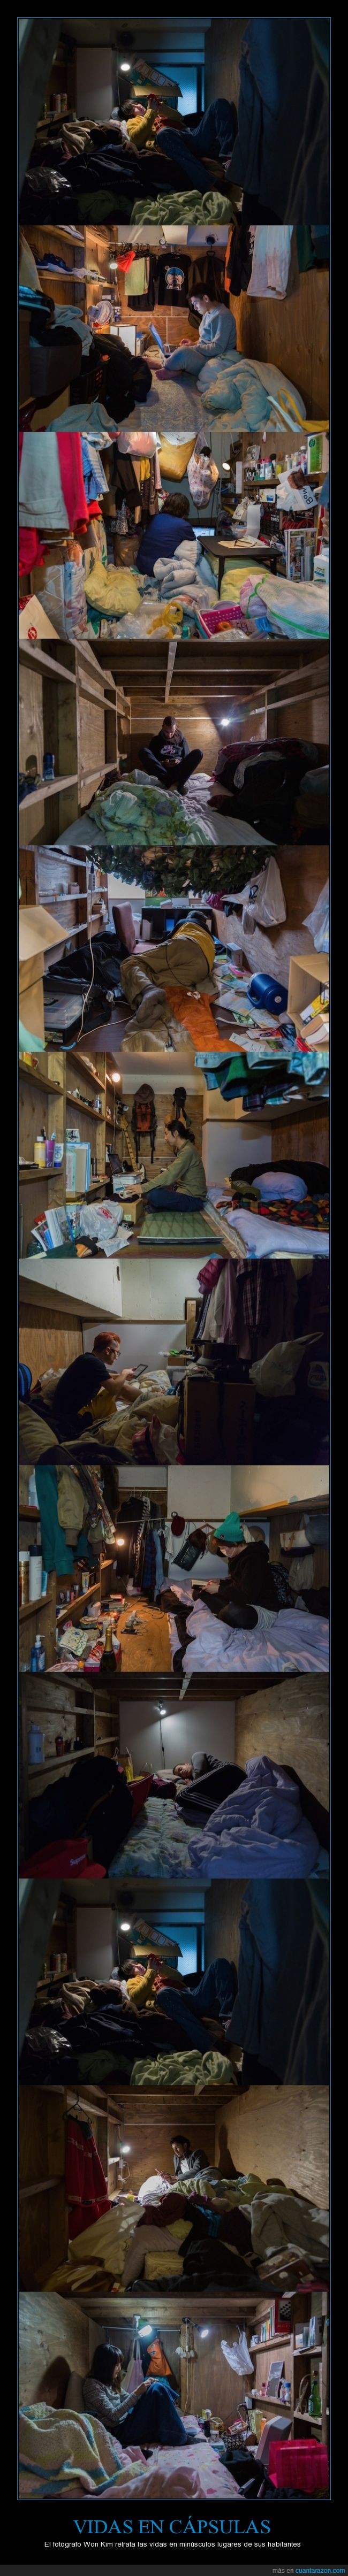 asiatico,capsula,habitación,habitar,hotel,Japón,mínimo,pequeño,vida